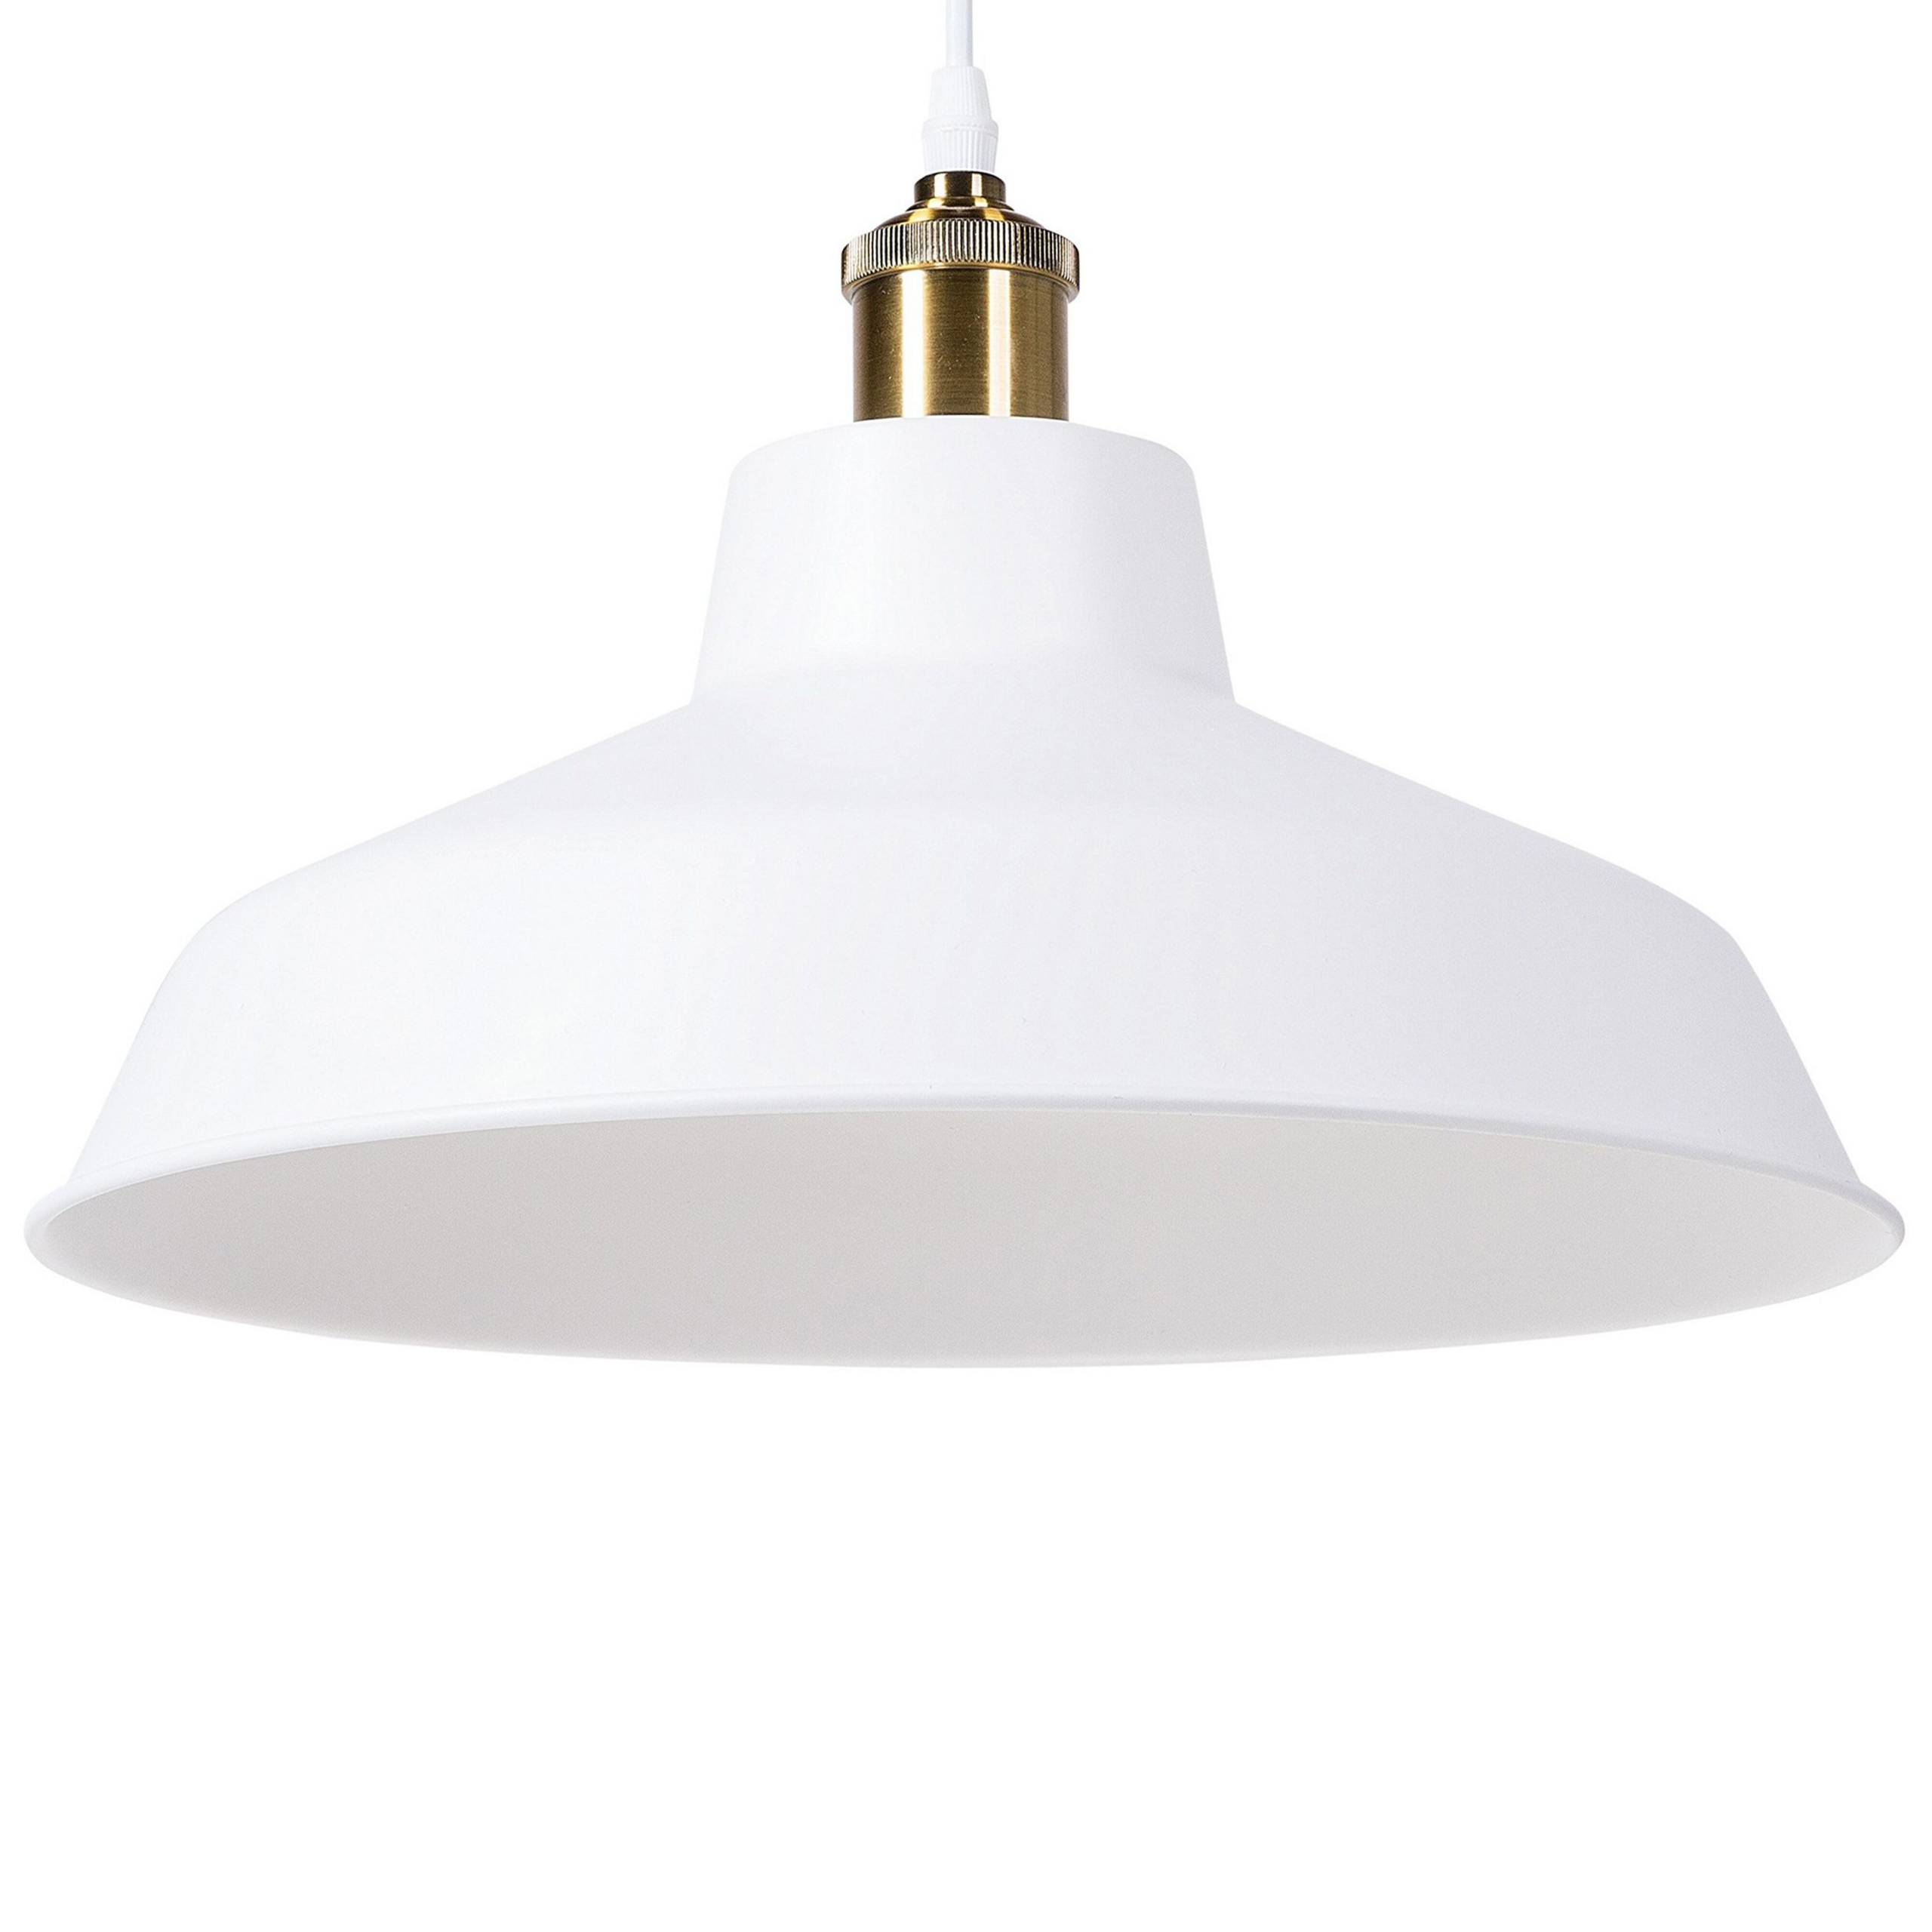 Beliani Hanging Light Pendant Lamp White Round Metal Shade Industrial Design